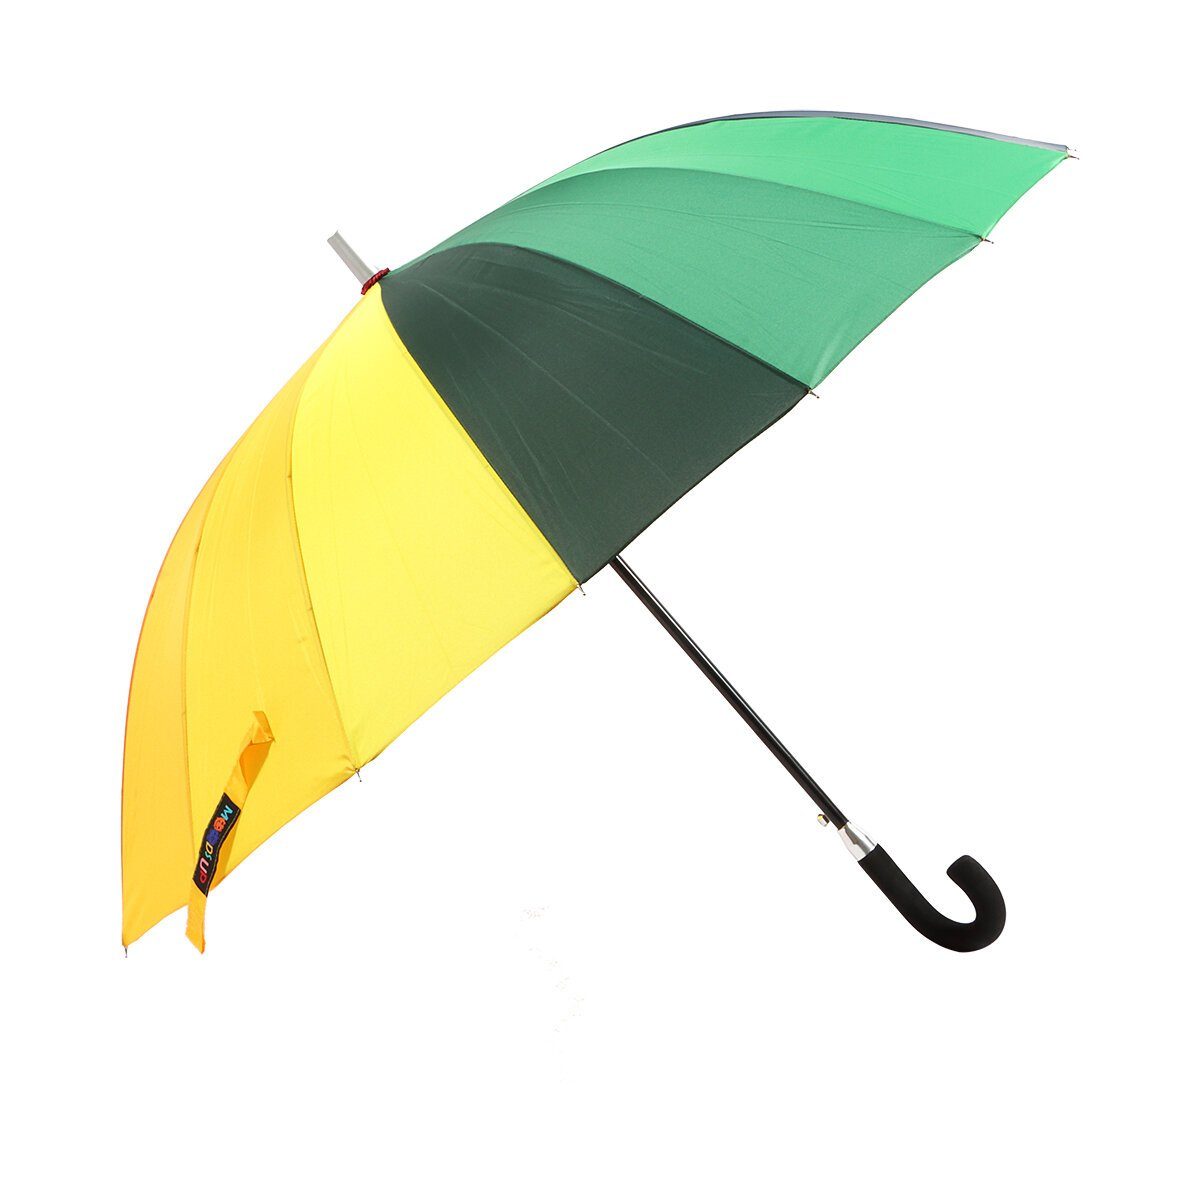 BIGGDESIGN Moods Up Langregenschirm Regenschirm Biggdesign